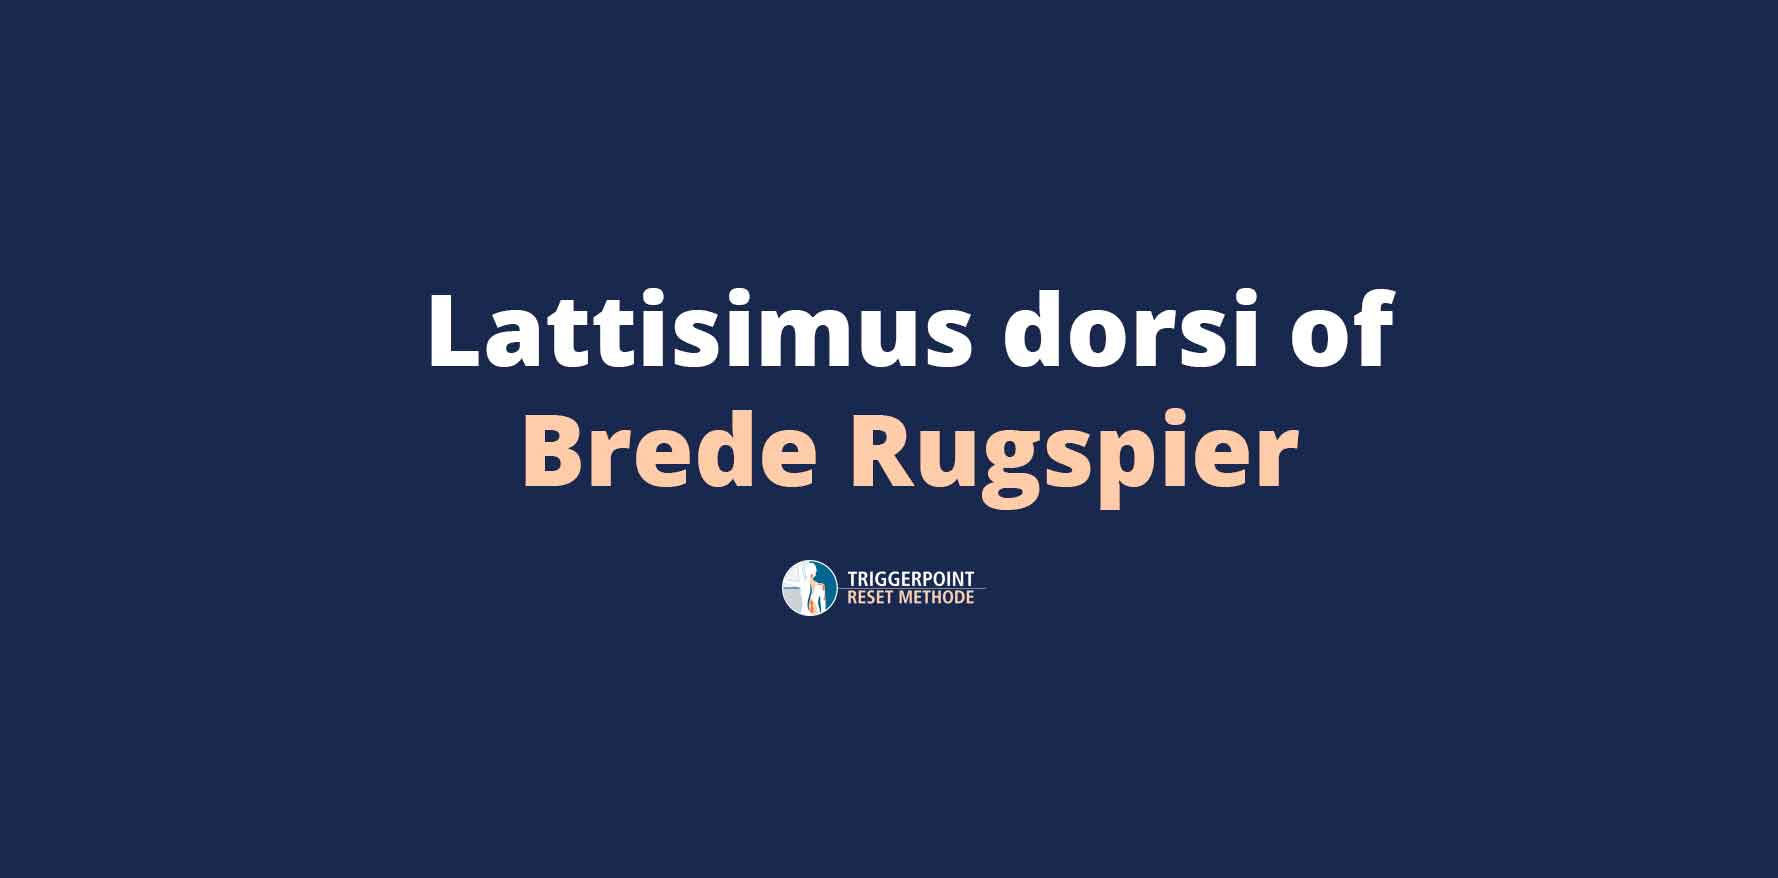 Latissimus Dorsi of Brede Rugspier